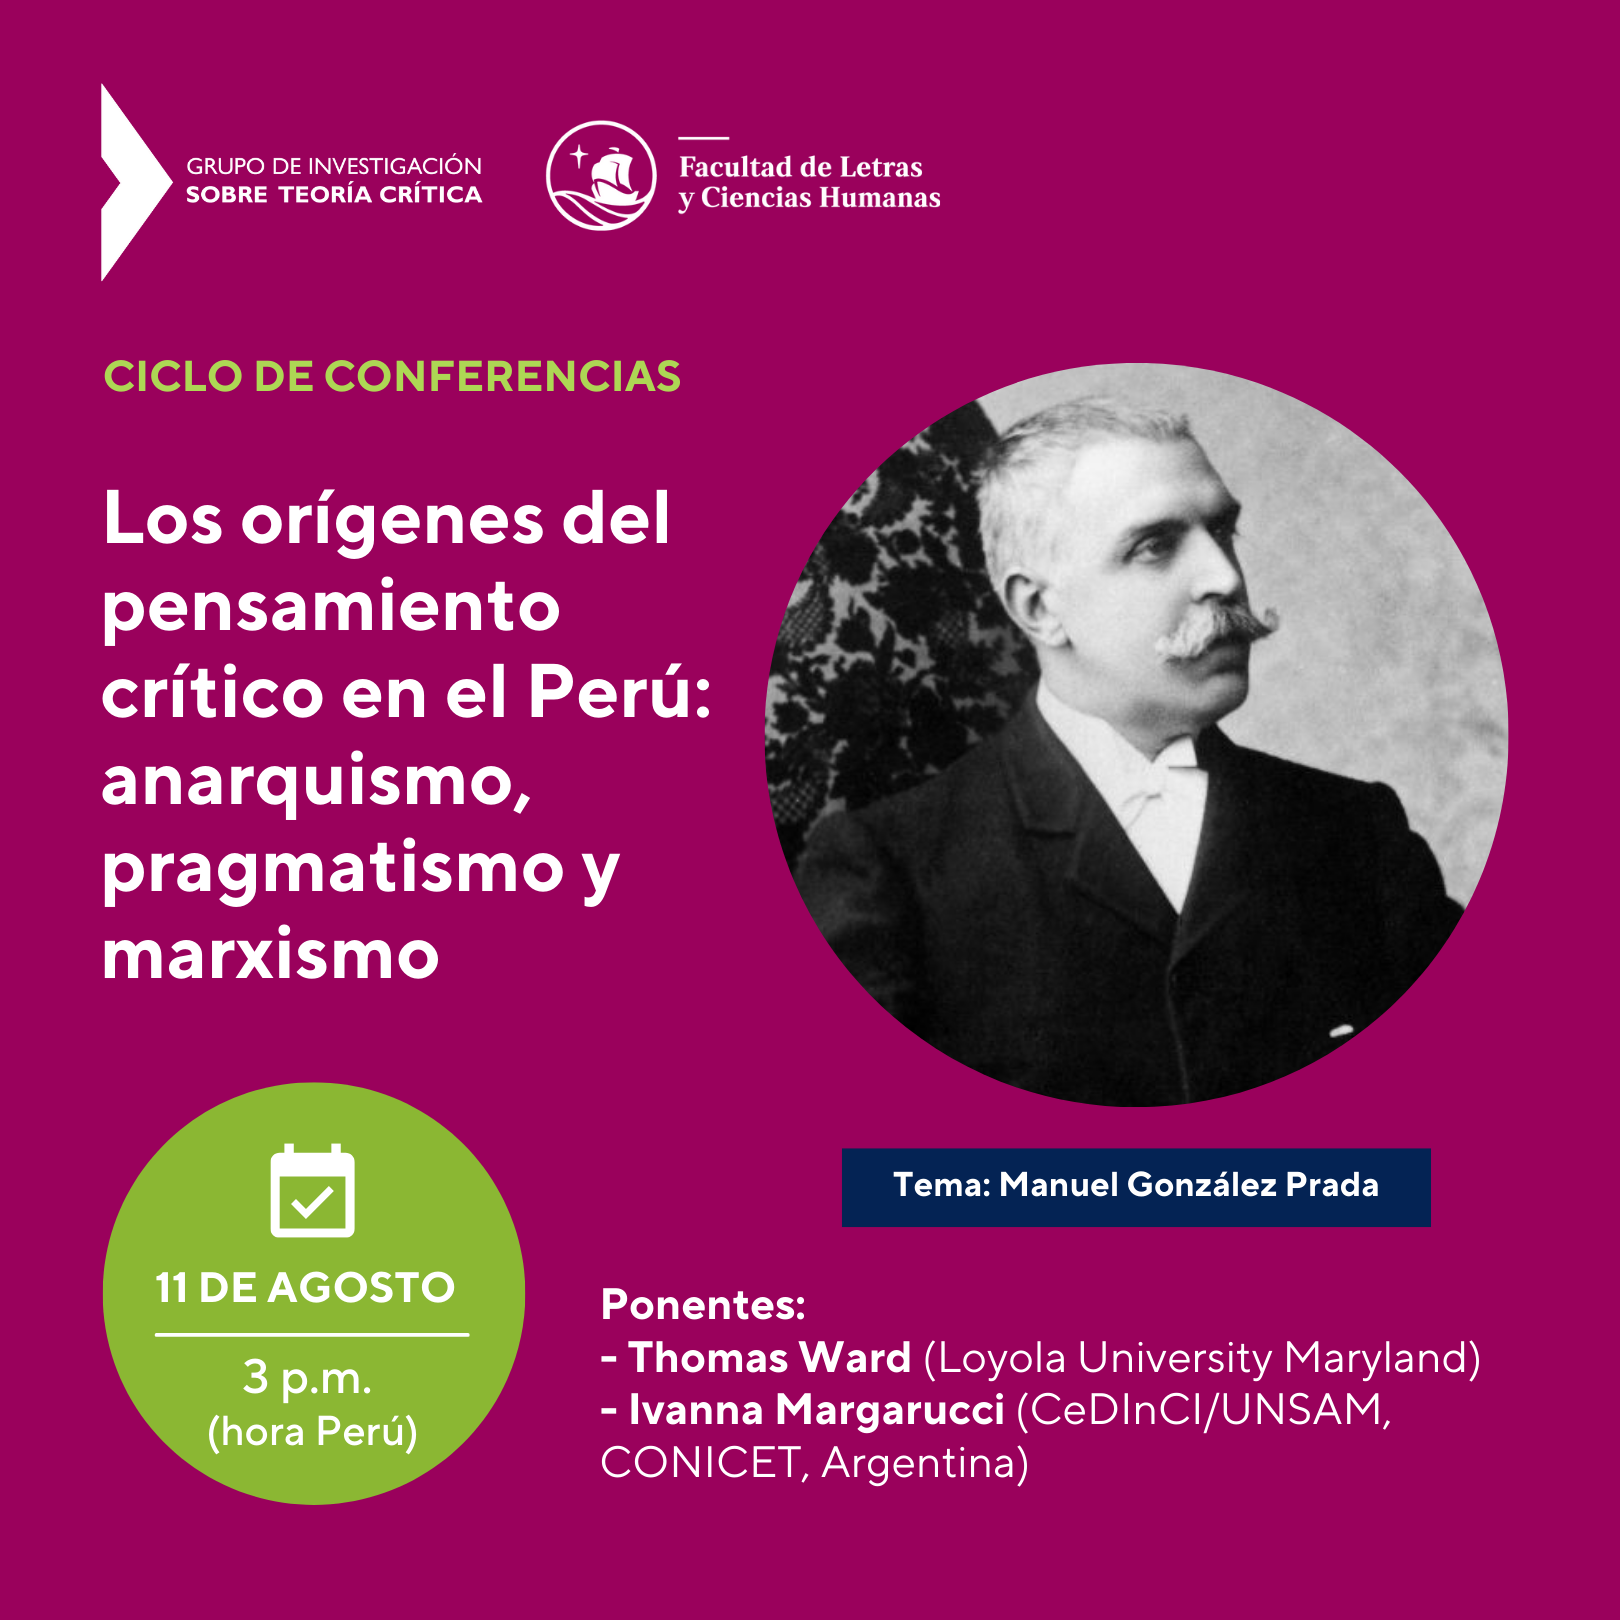 Ciclo de conferencias | Los orígenes del pensamiento crítico en el Perú: anarquismo, pragmatismo y marxismo